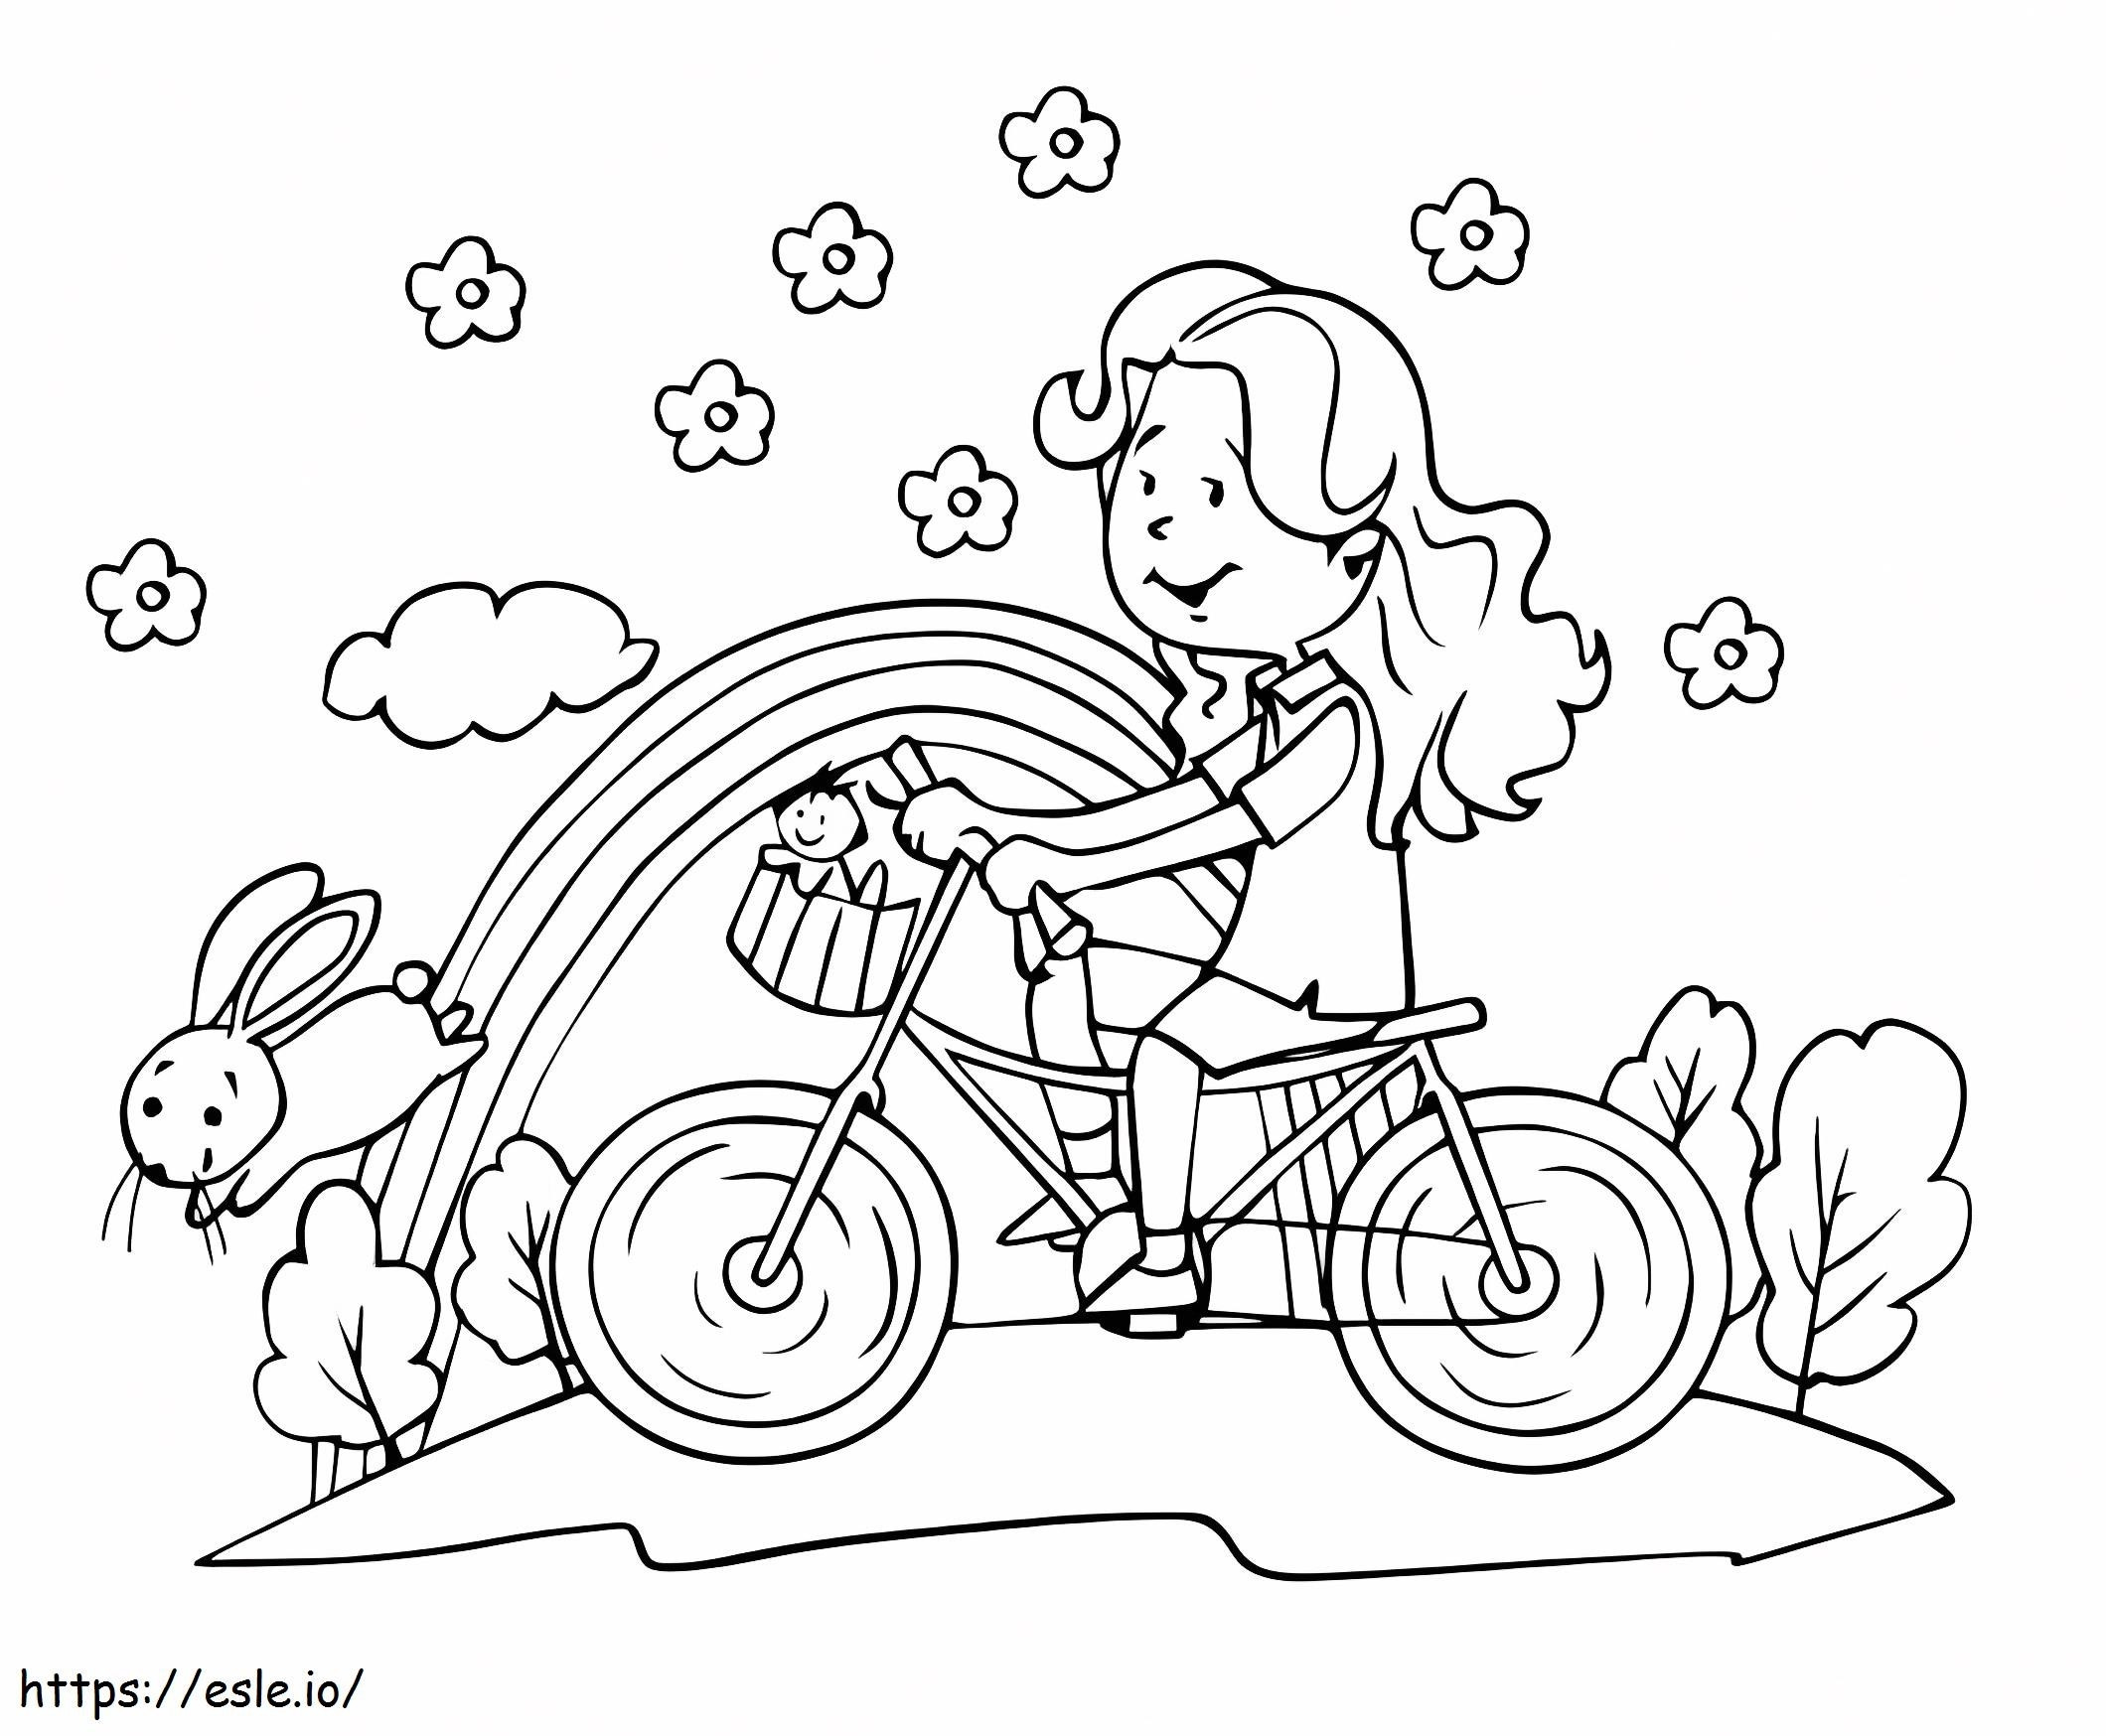 Bisiklete binen sevimli bir kız boyama